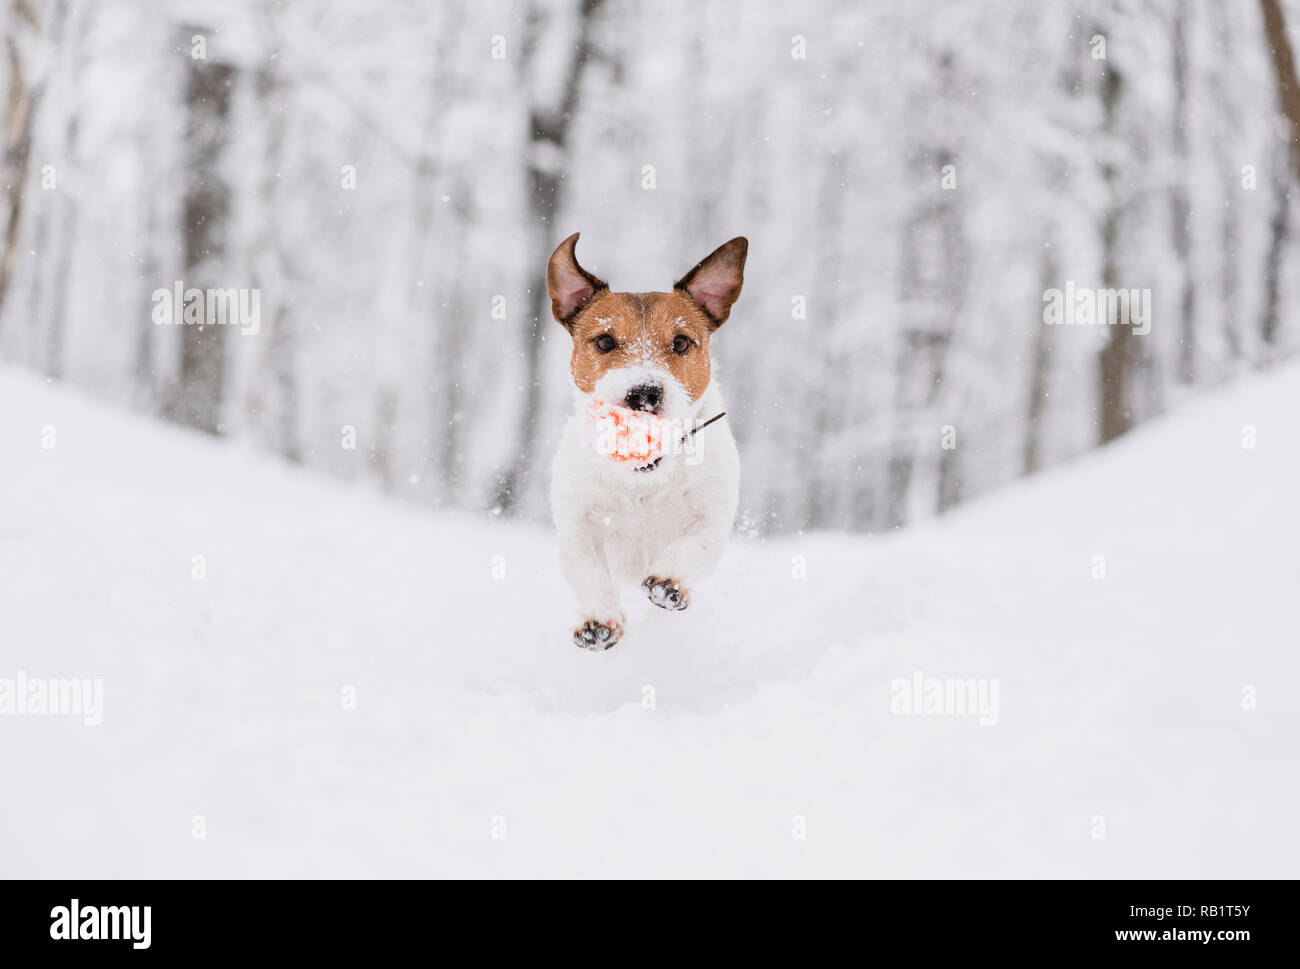 Glücklicher Hund bergab laufen und spielen in Winter Park mit hellen Spielzeug ball Stockfoto